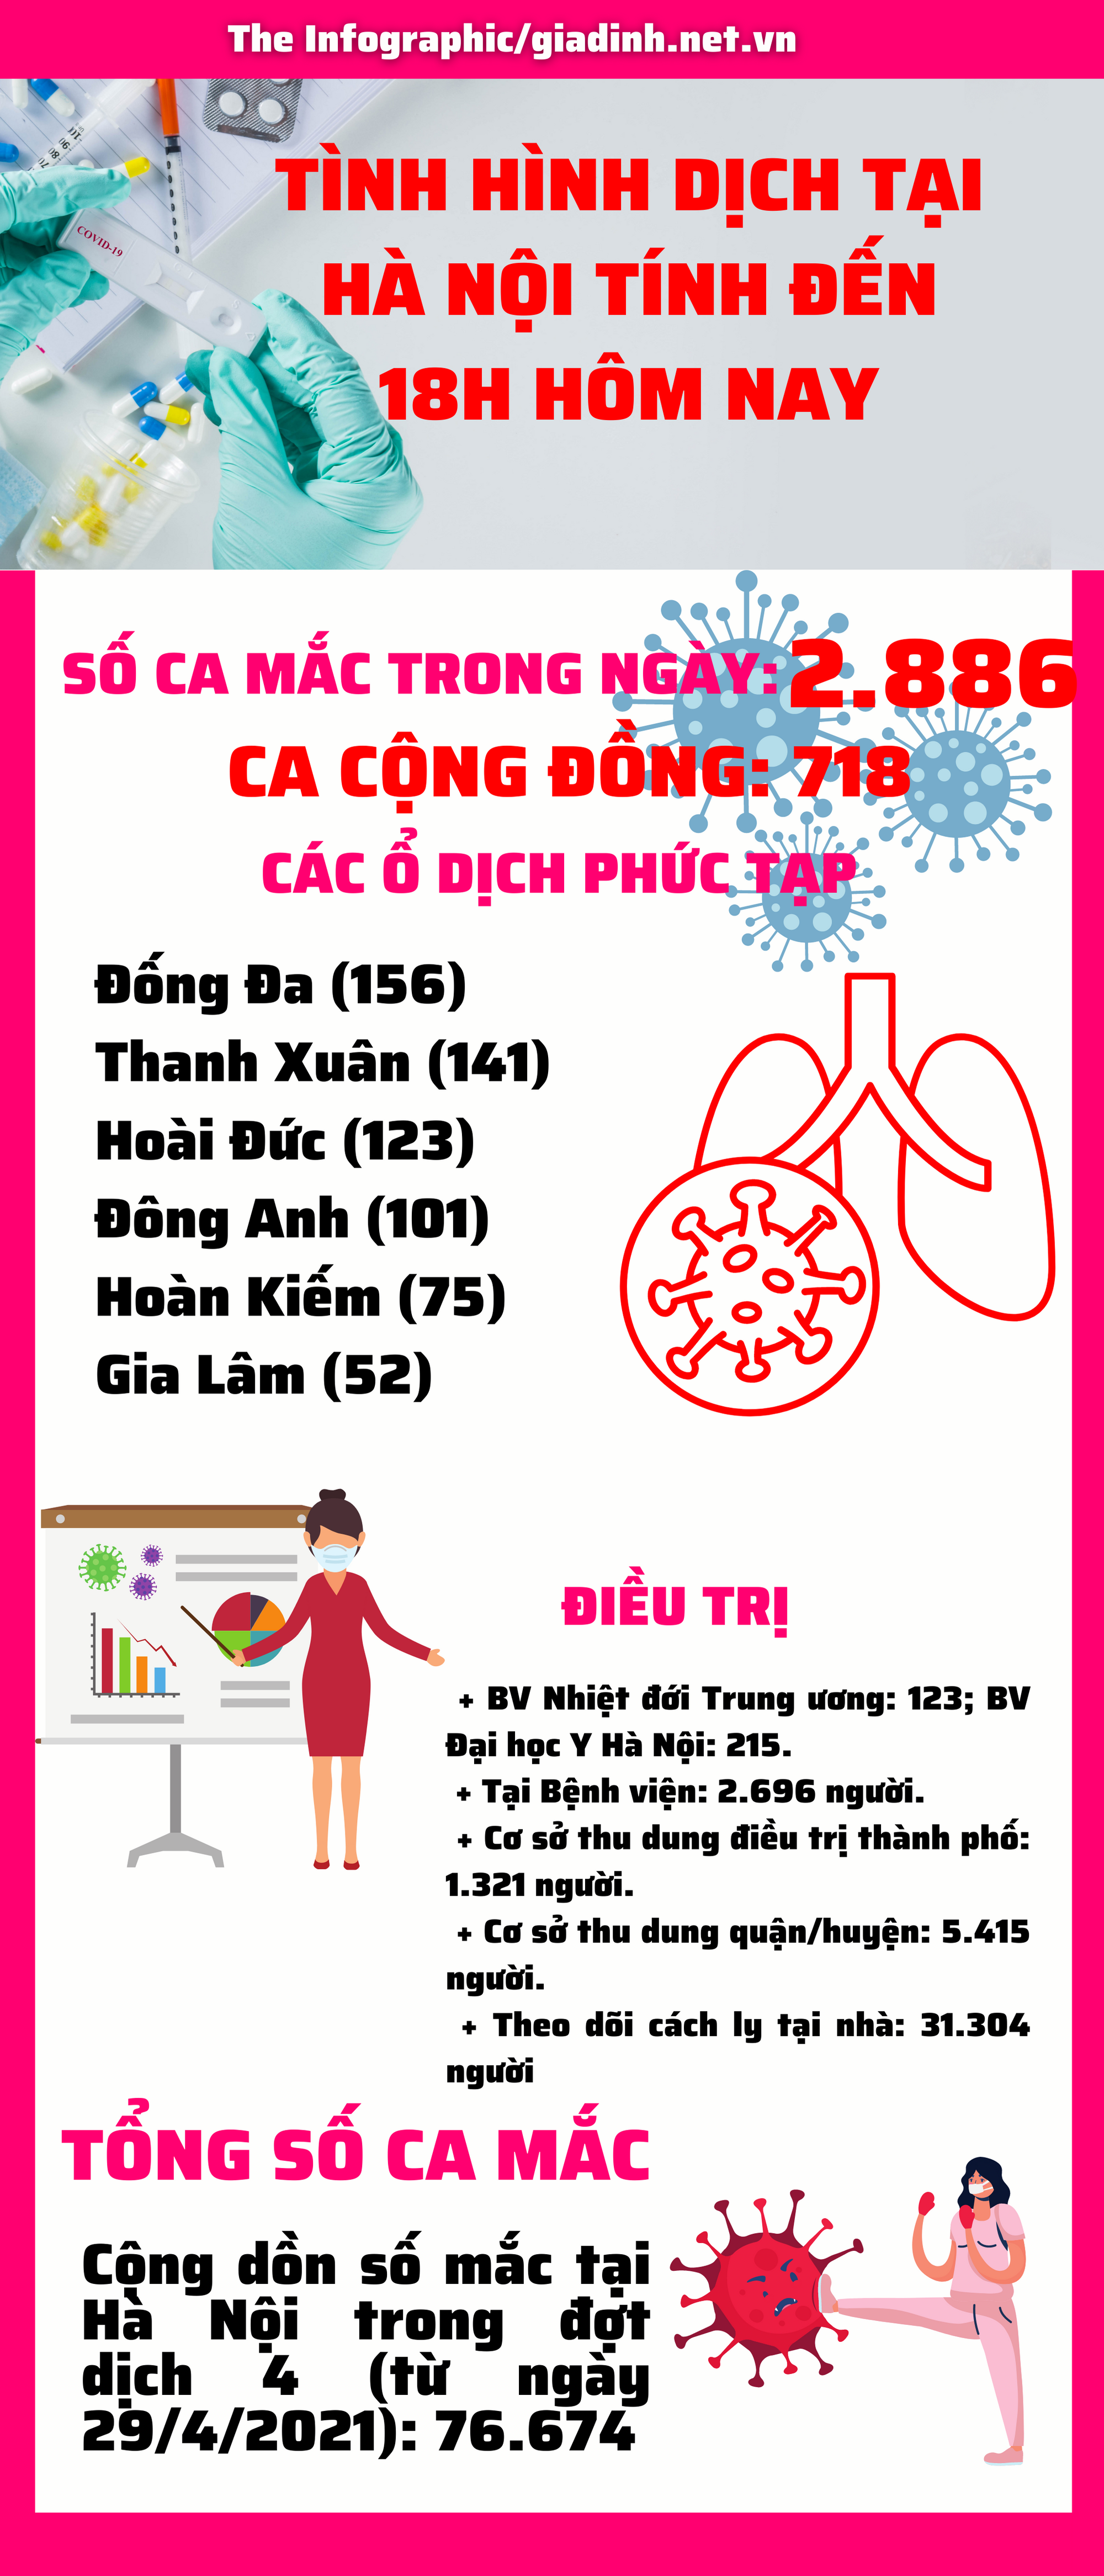 Hà Nội có 2.884 ca mắc COVID-19 mới trong đó có 718 ca cộng đồng - Ảnh 1.